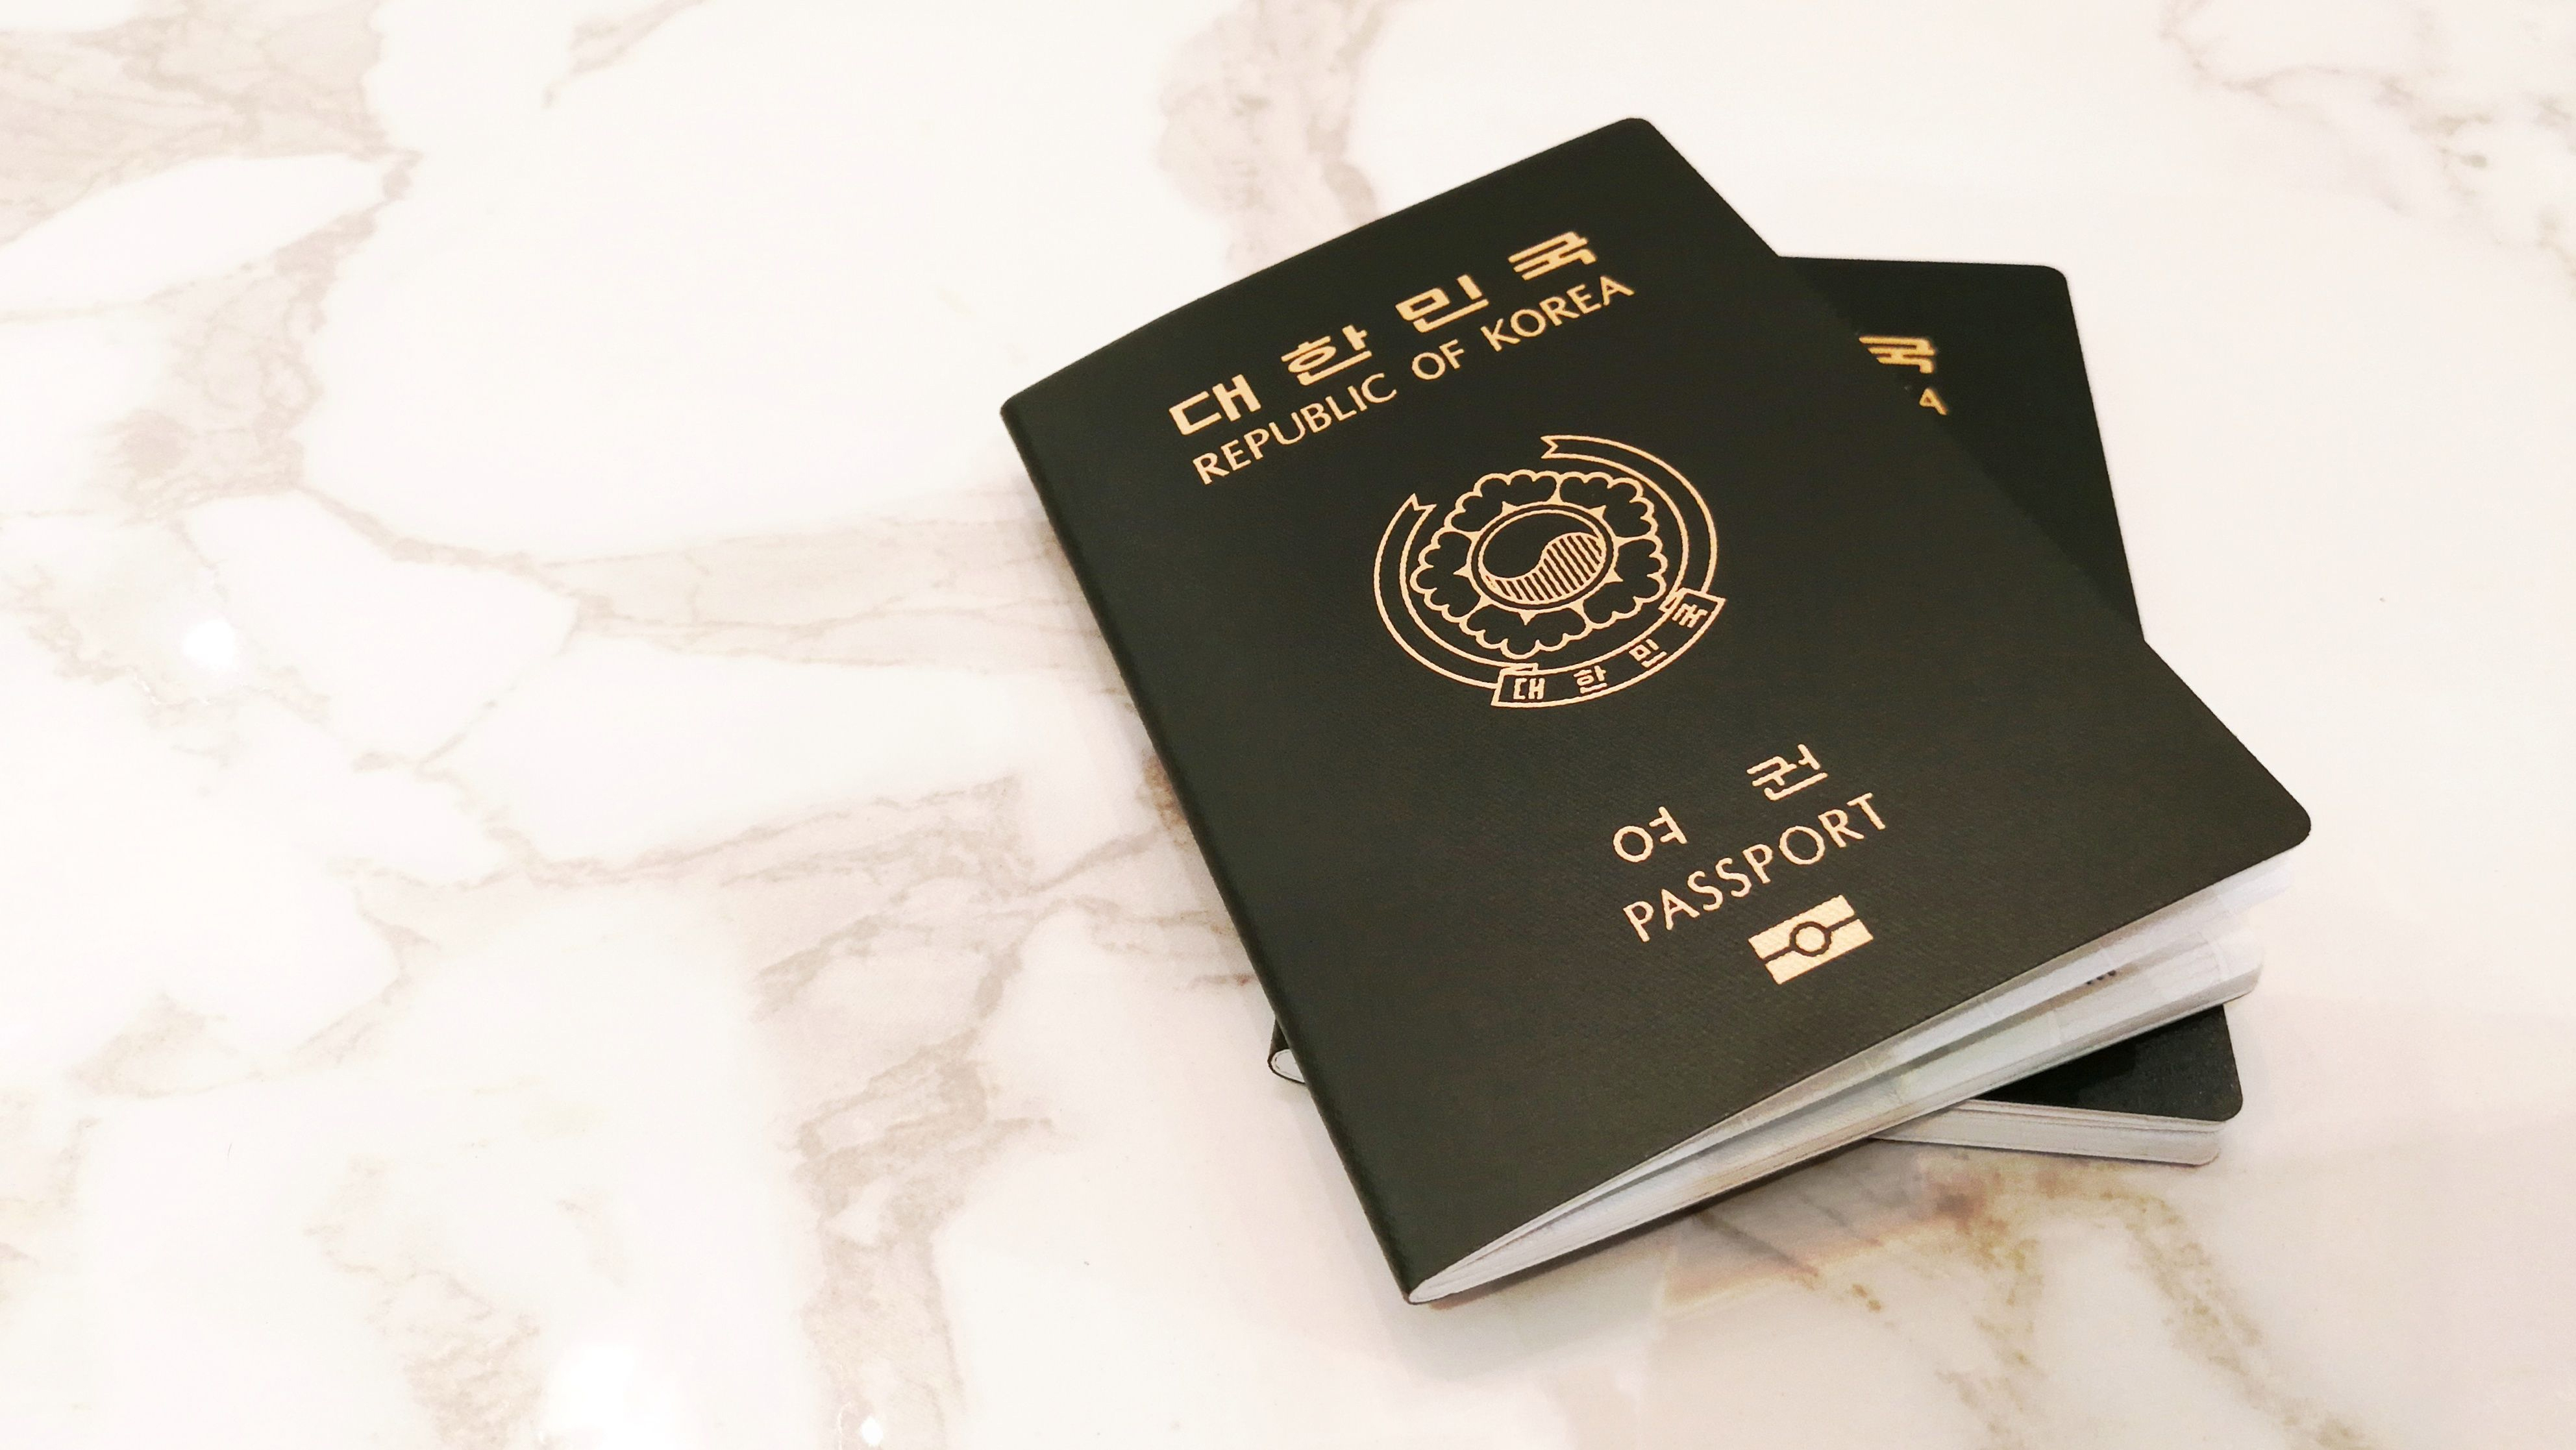 Корейский паспорт, который могут оформить иностранцы